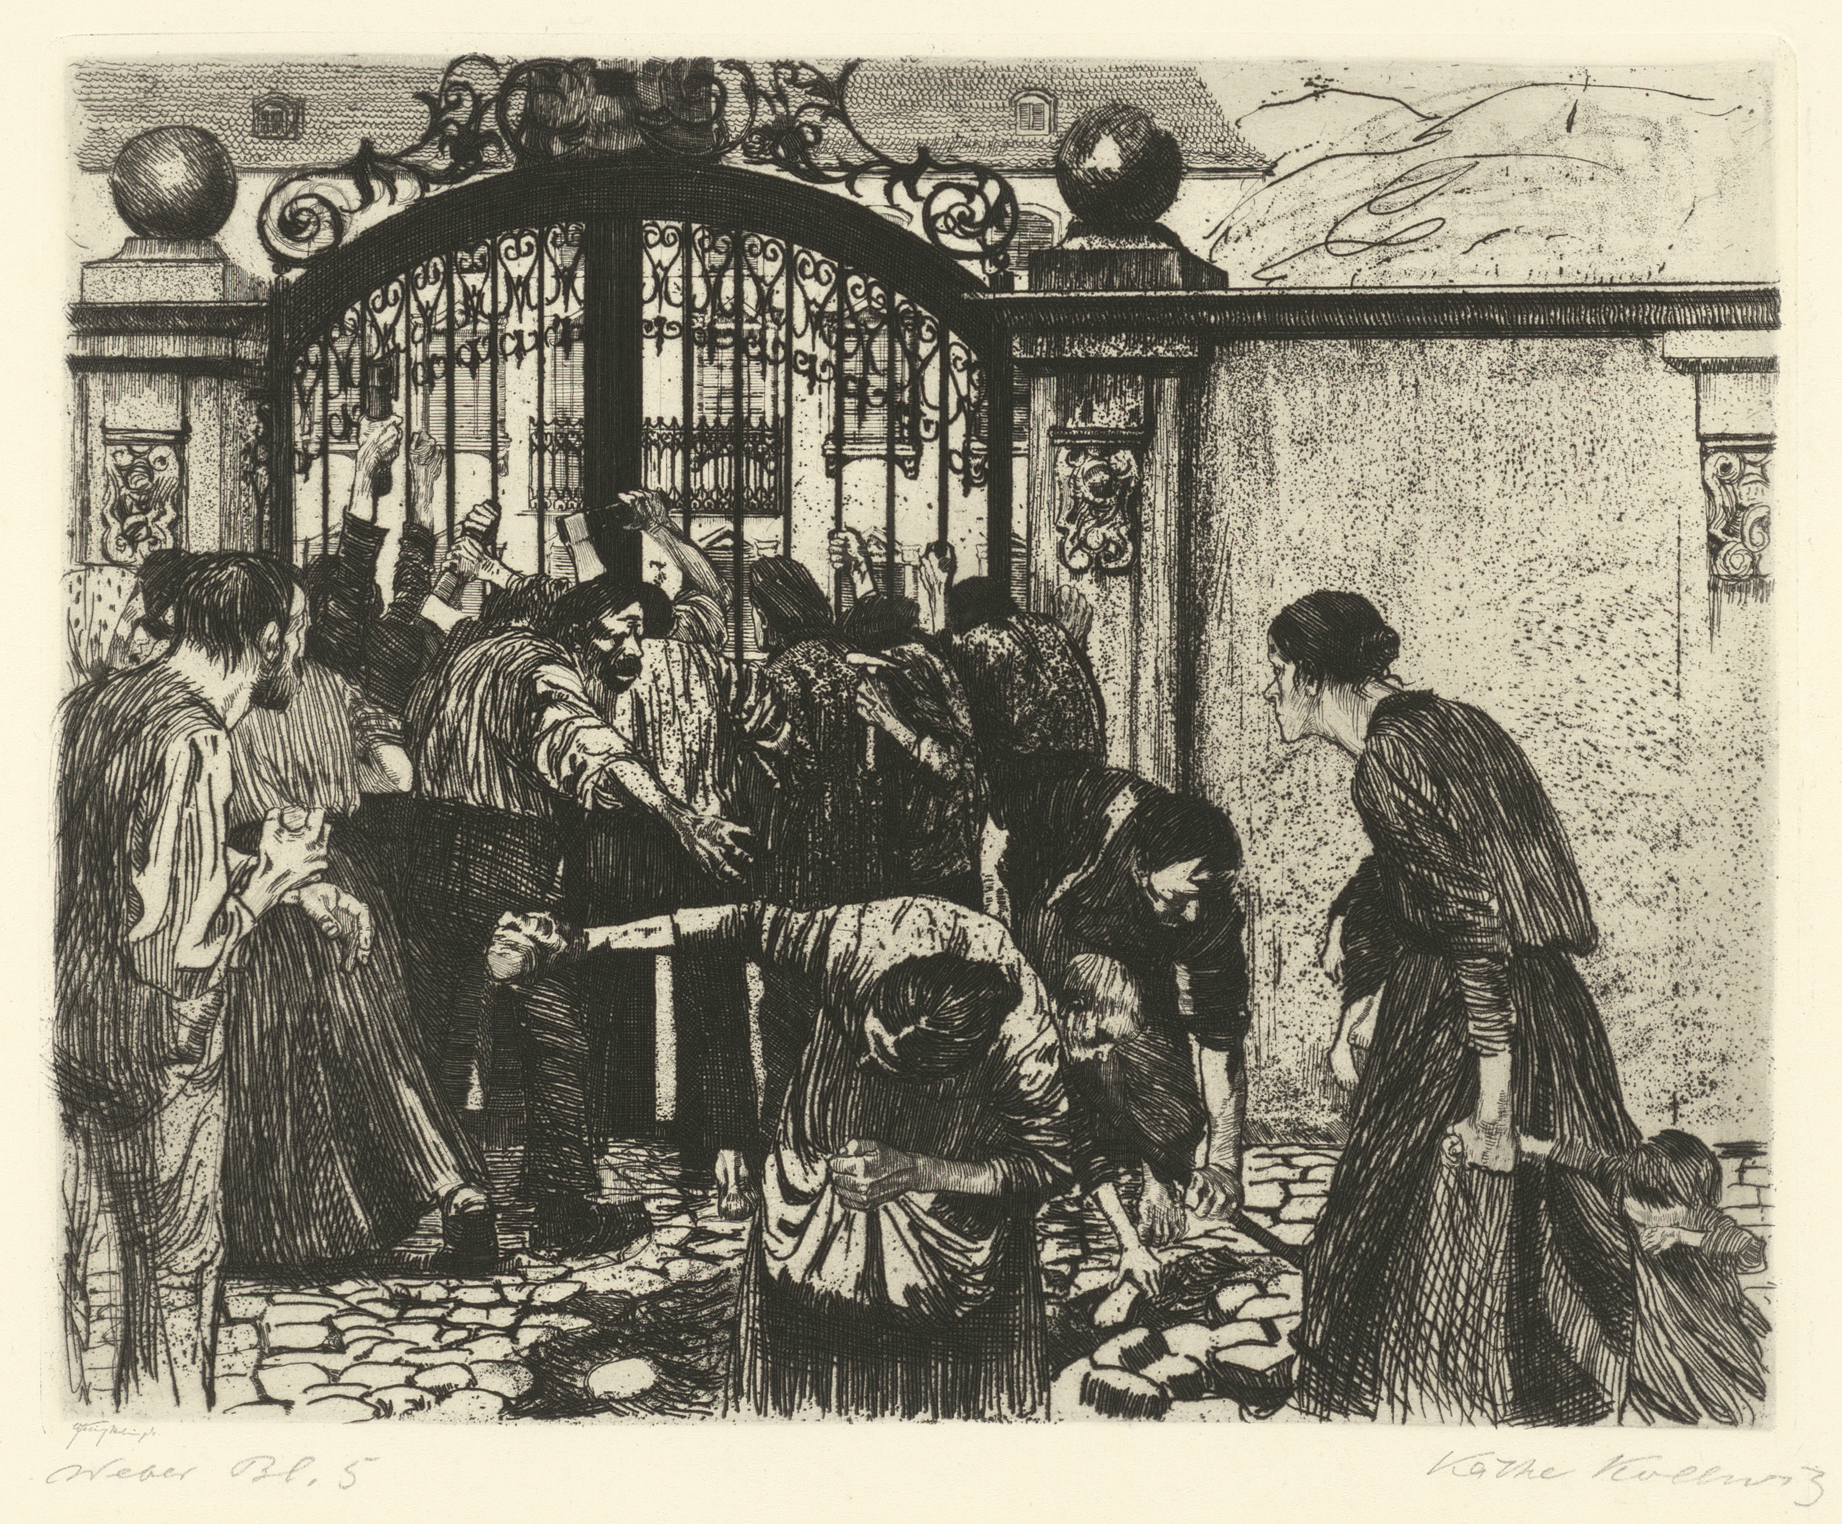 Käthe Kollwitz, Attaque, planche 5 du cycle »Une Révolte des tisserands«, 1893-97, eau-forte, émeri, Kn 37 II a